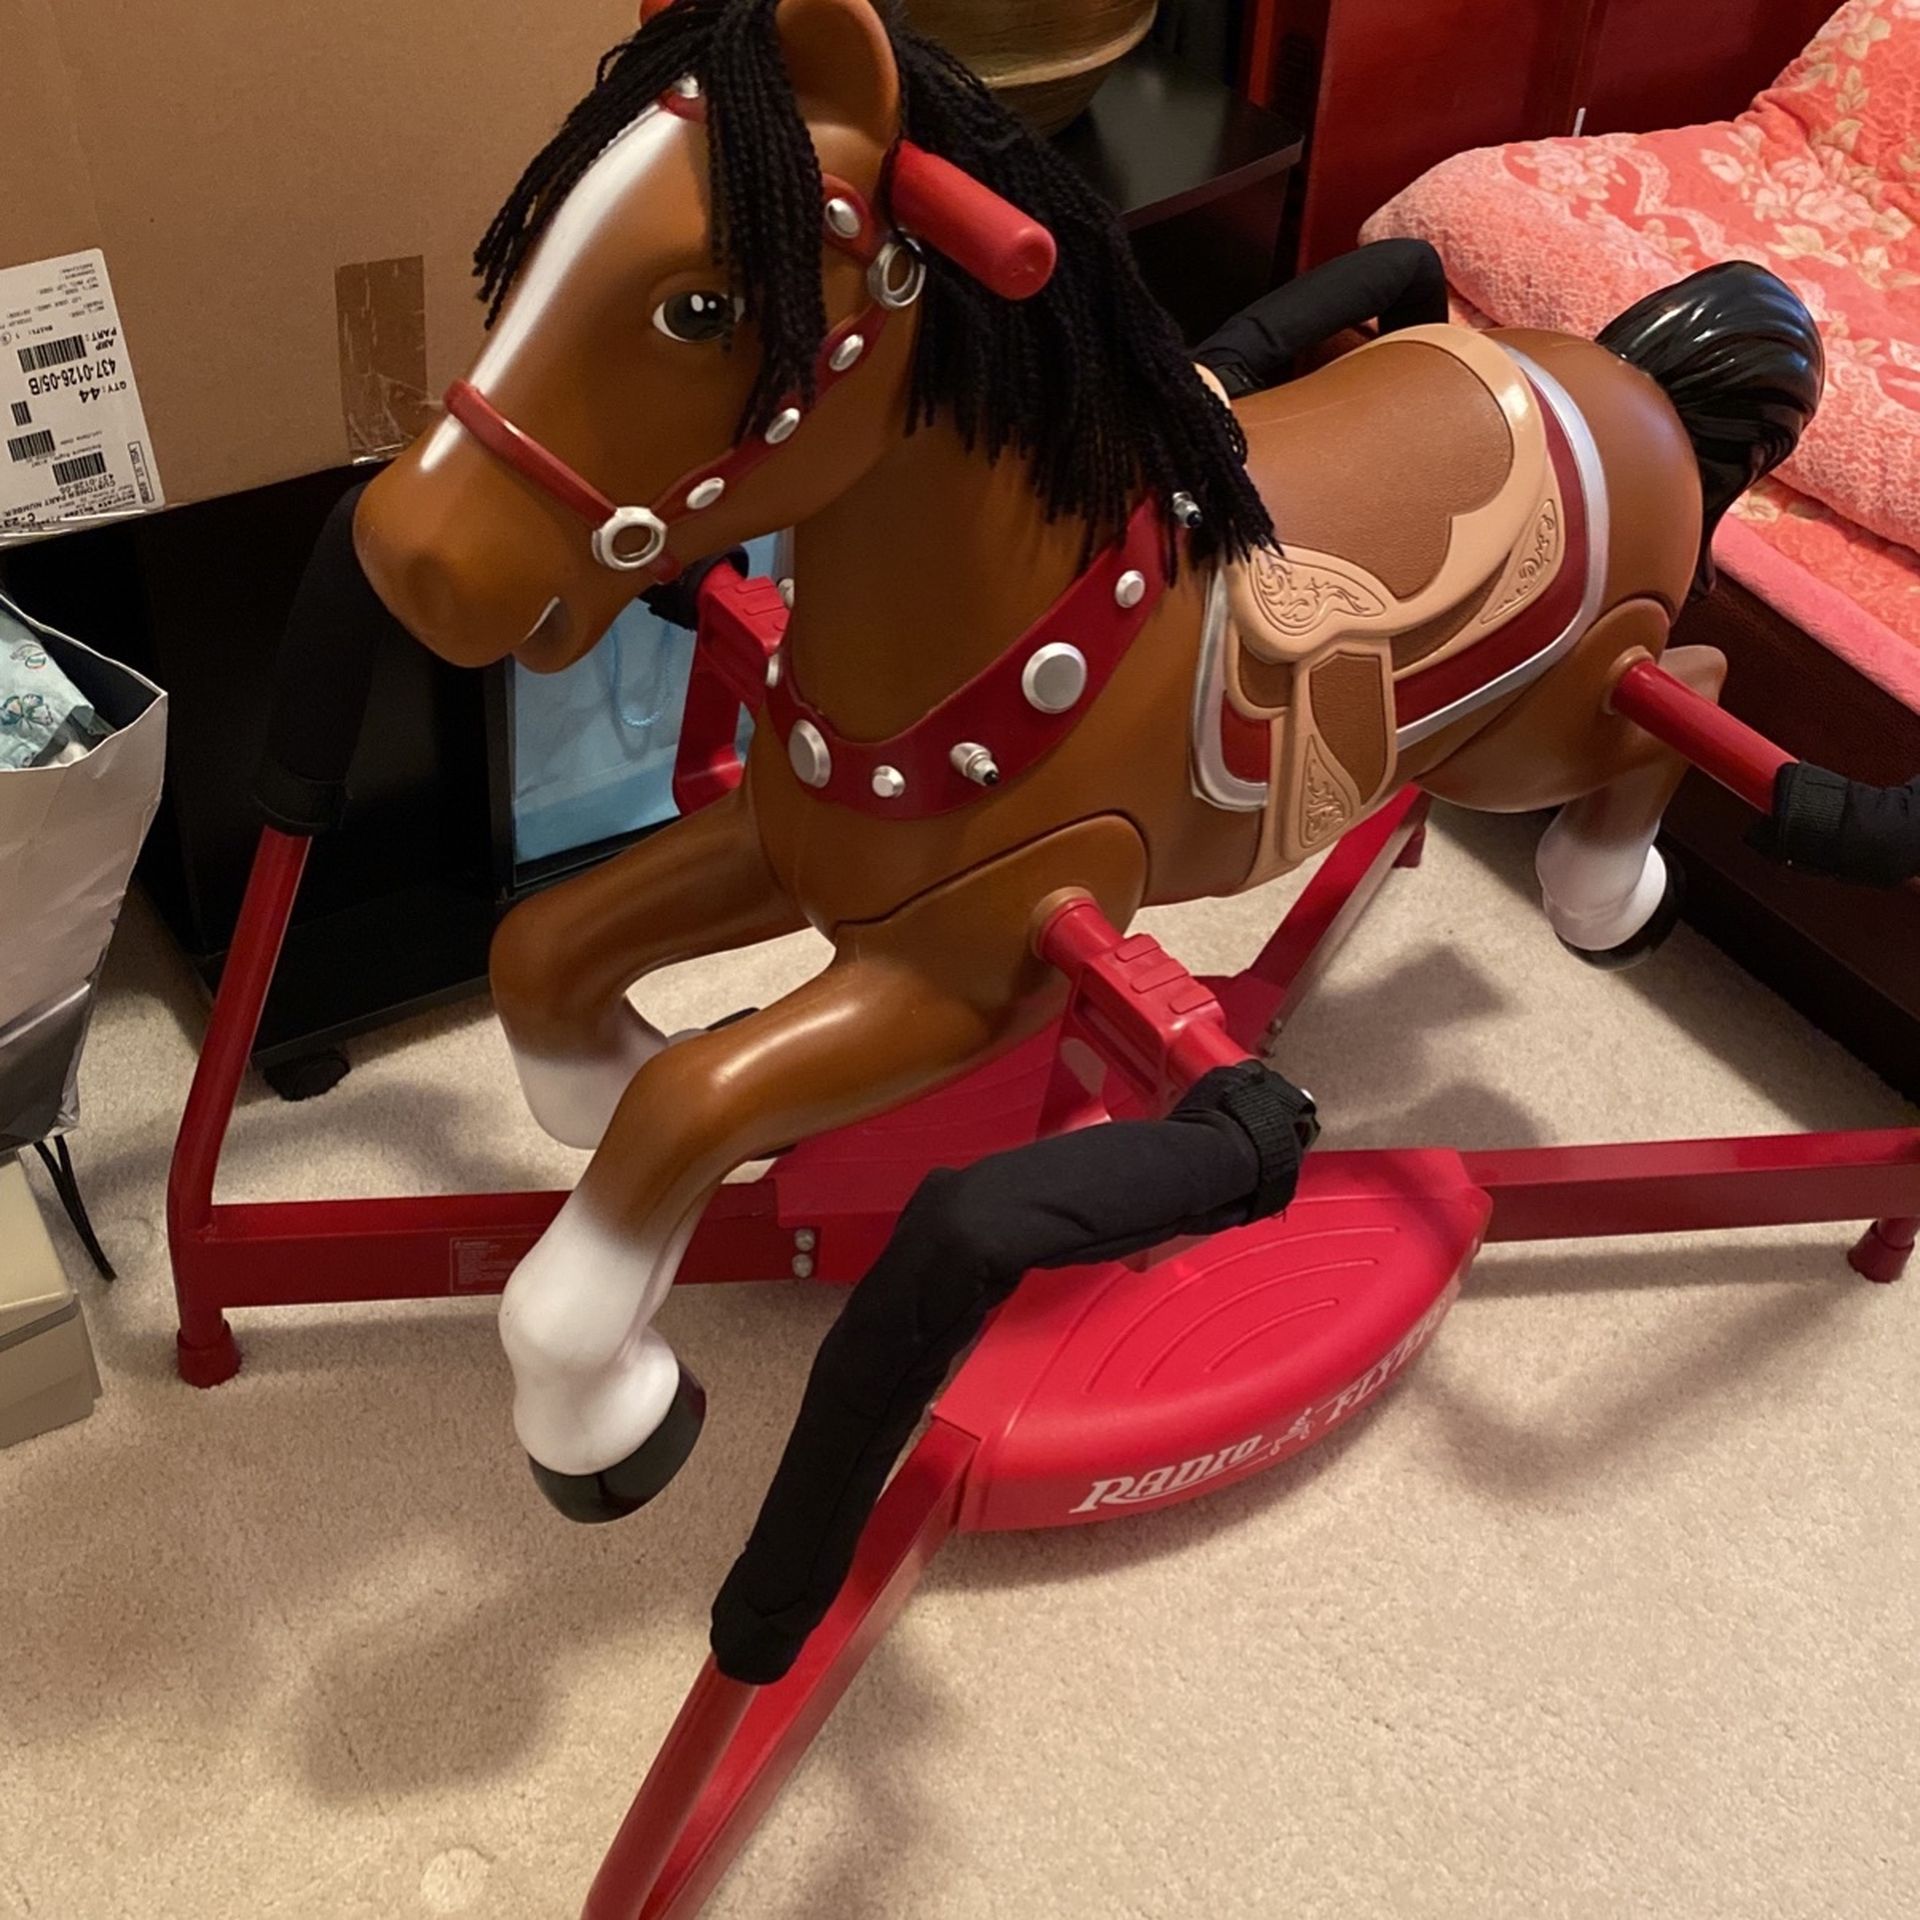 Rocking Horse Toy